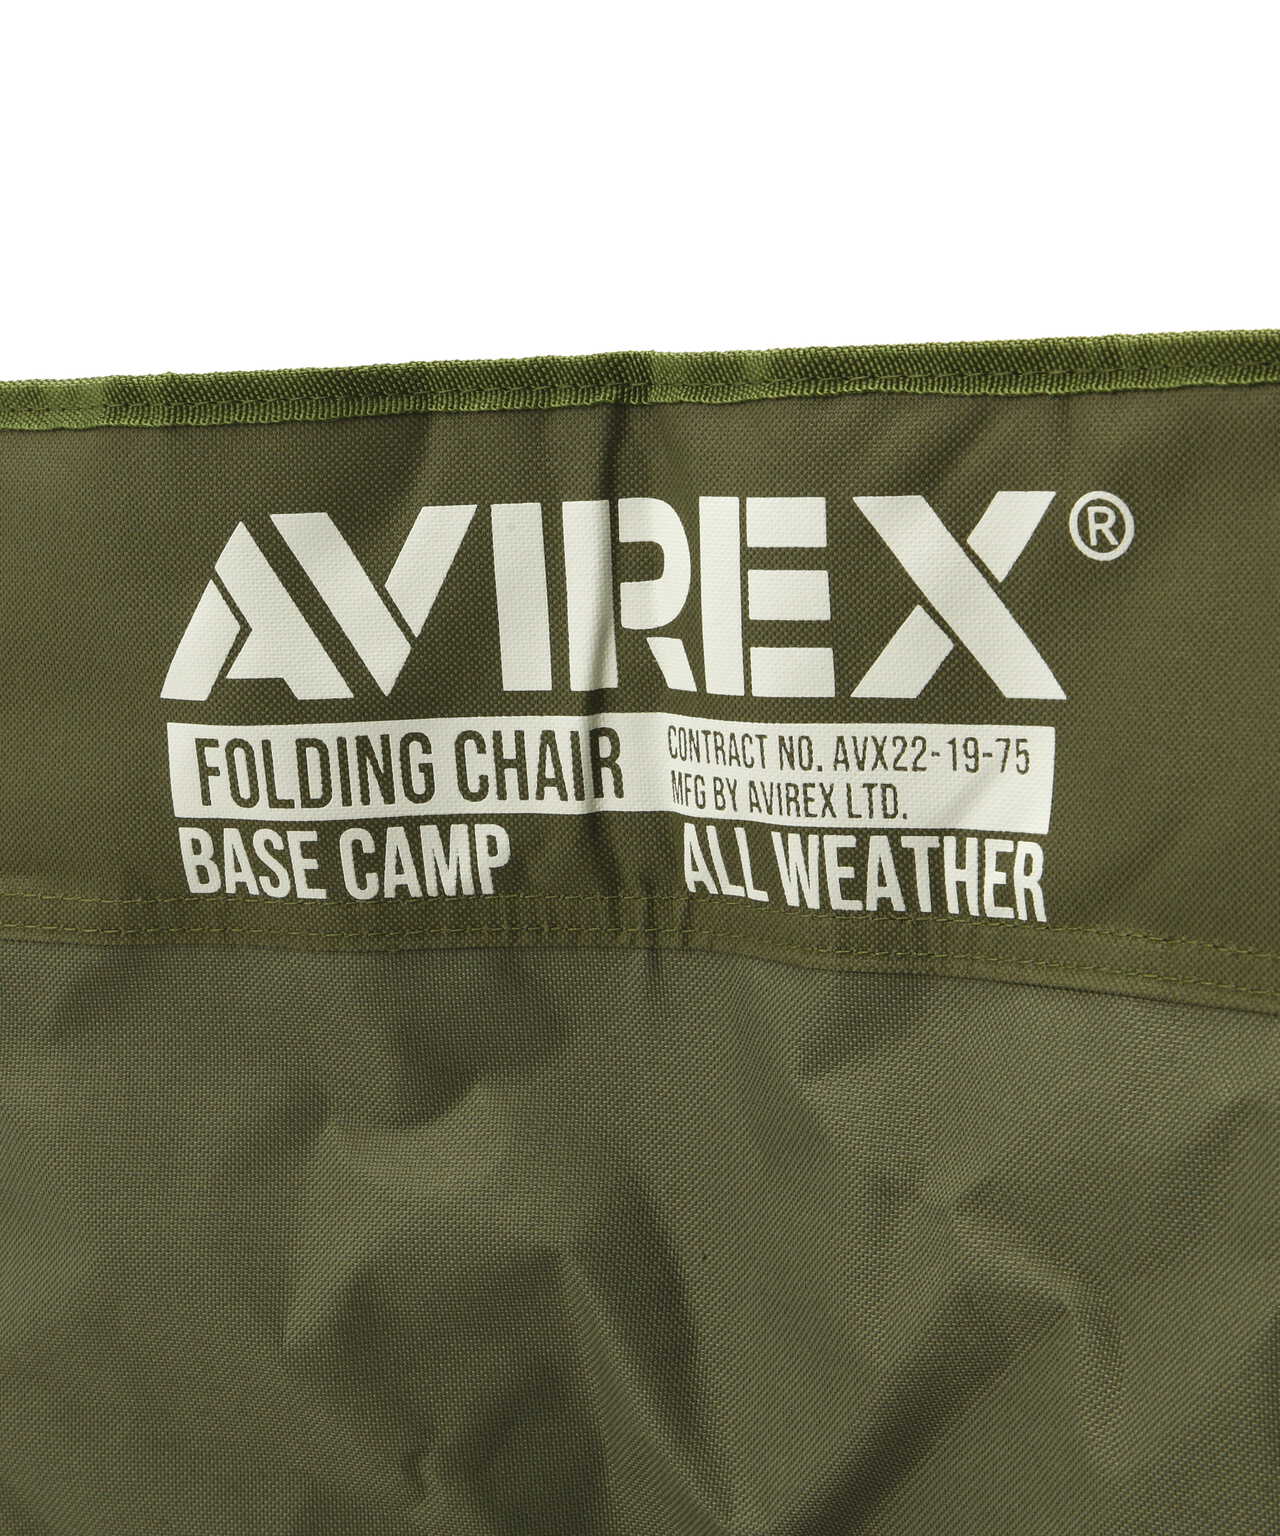 AVIREX フォールディング チェア / FOLDING CHAIR